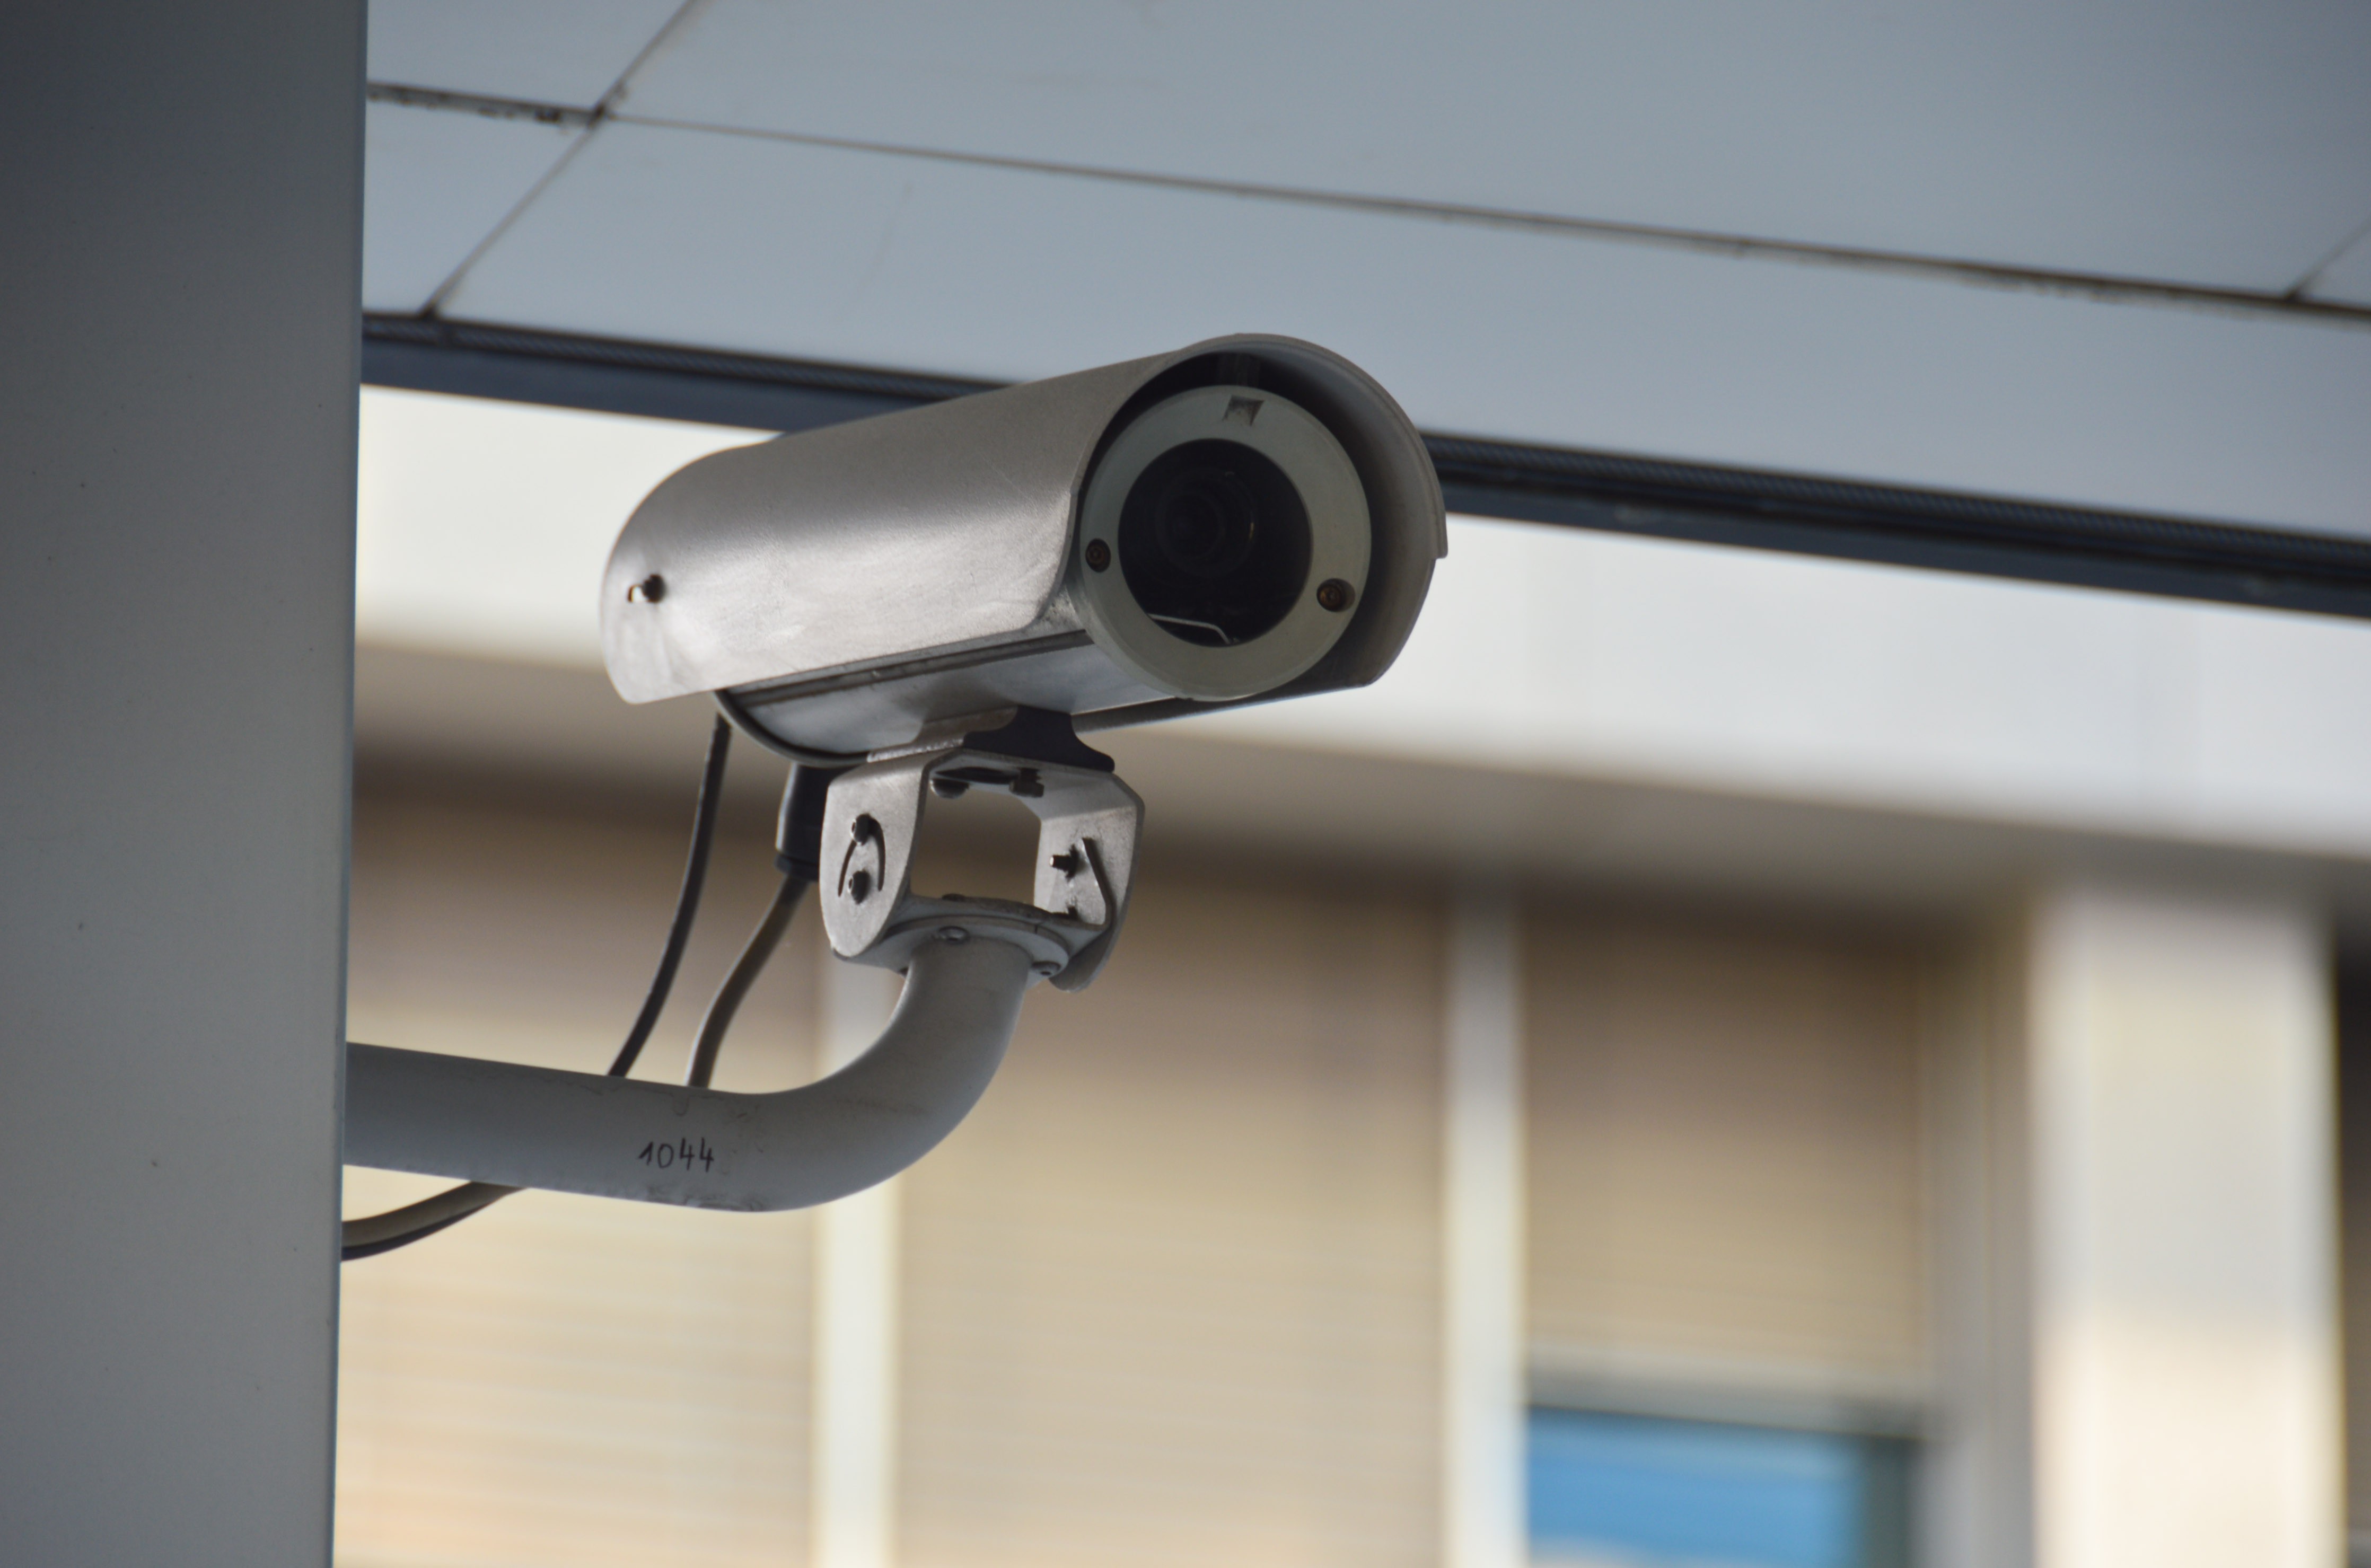 Protégez votre domicile avec cette caméra de surveillance